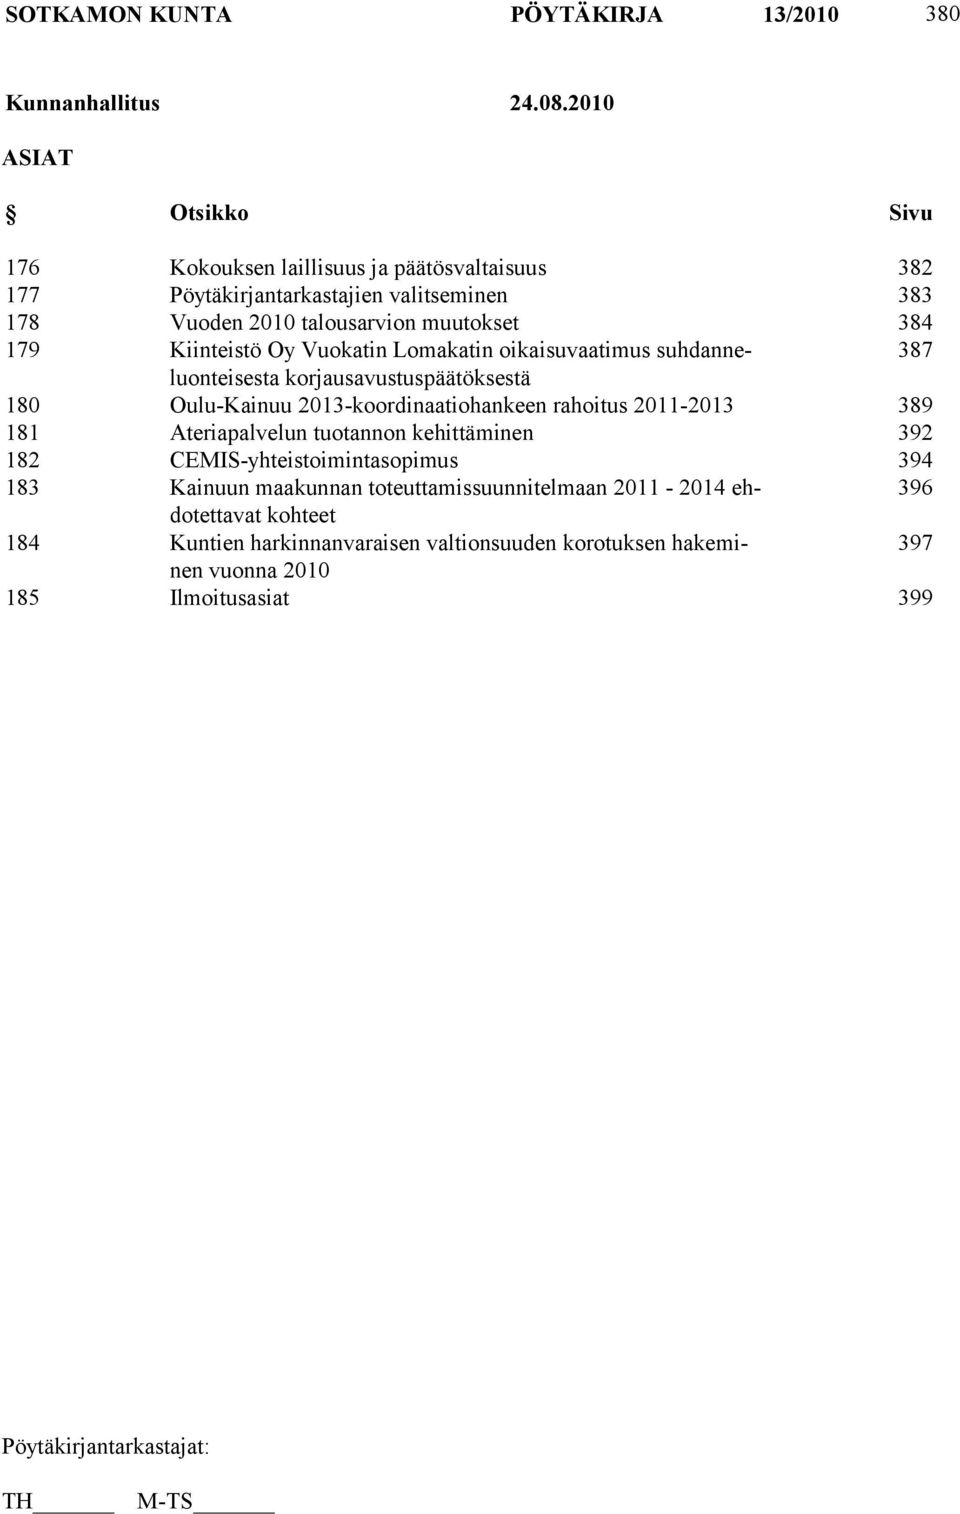 179 Kiinteistö Oy Vuokatin Lomakatin oikaisuvaatimus suhdanneluonteisesta 387 korjausavustuspäätöksestä 180 Oulu-Kainuu 2013-koordinaatiohankeen rahoitus 2011-2013